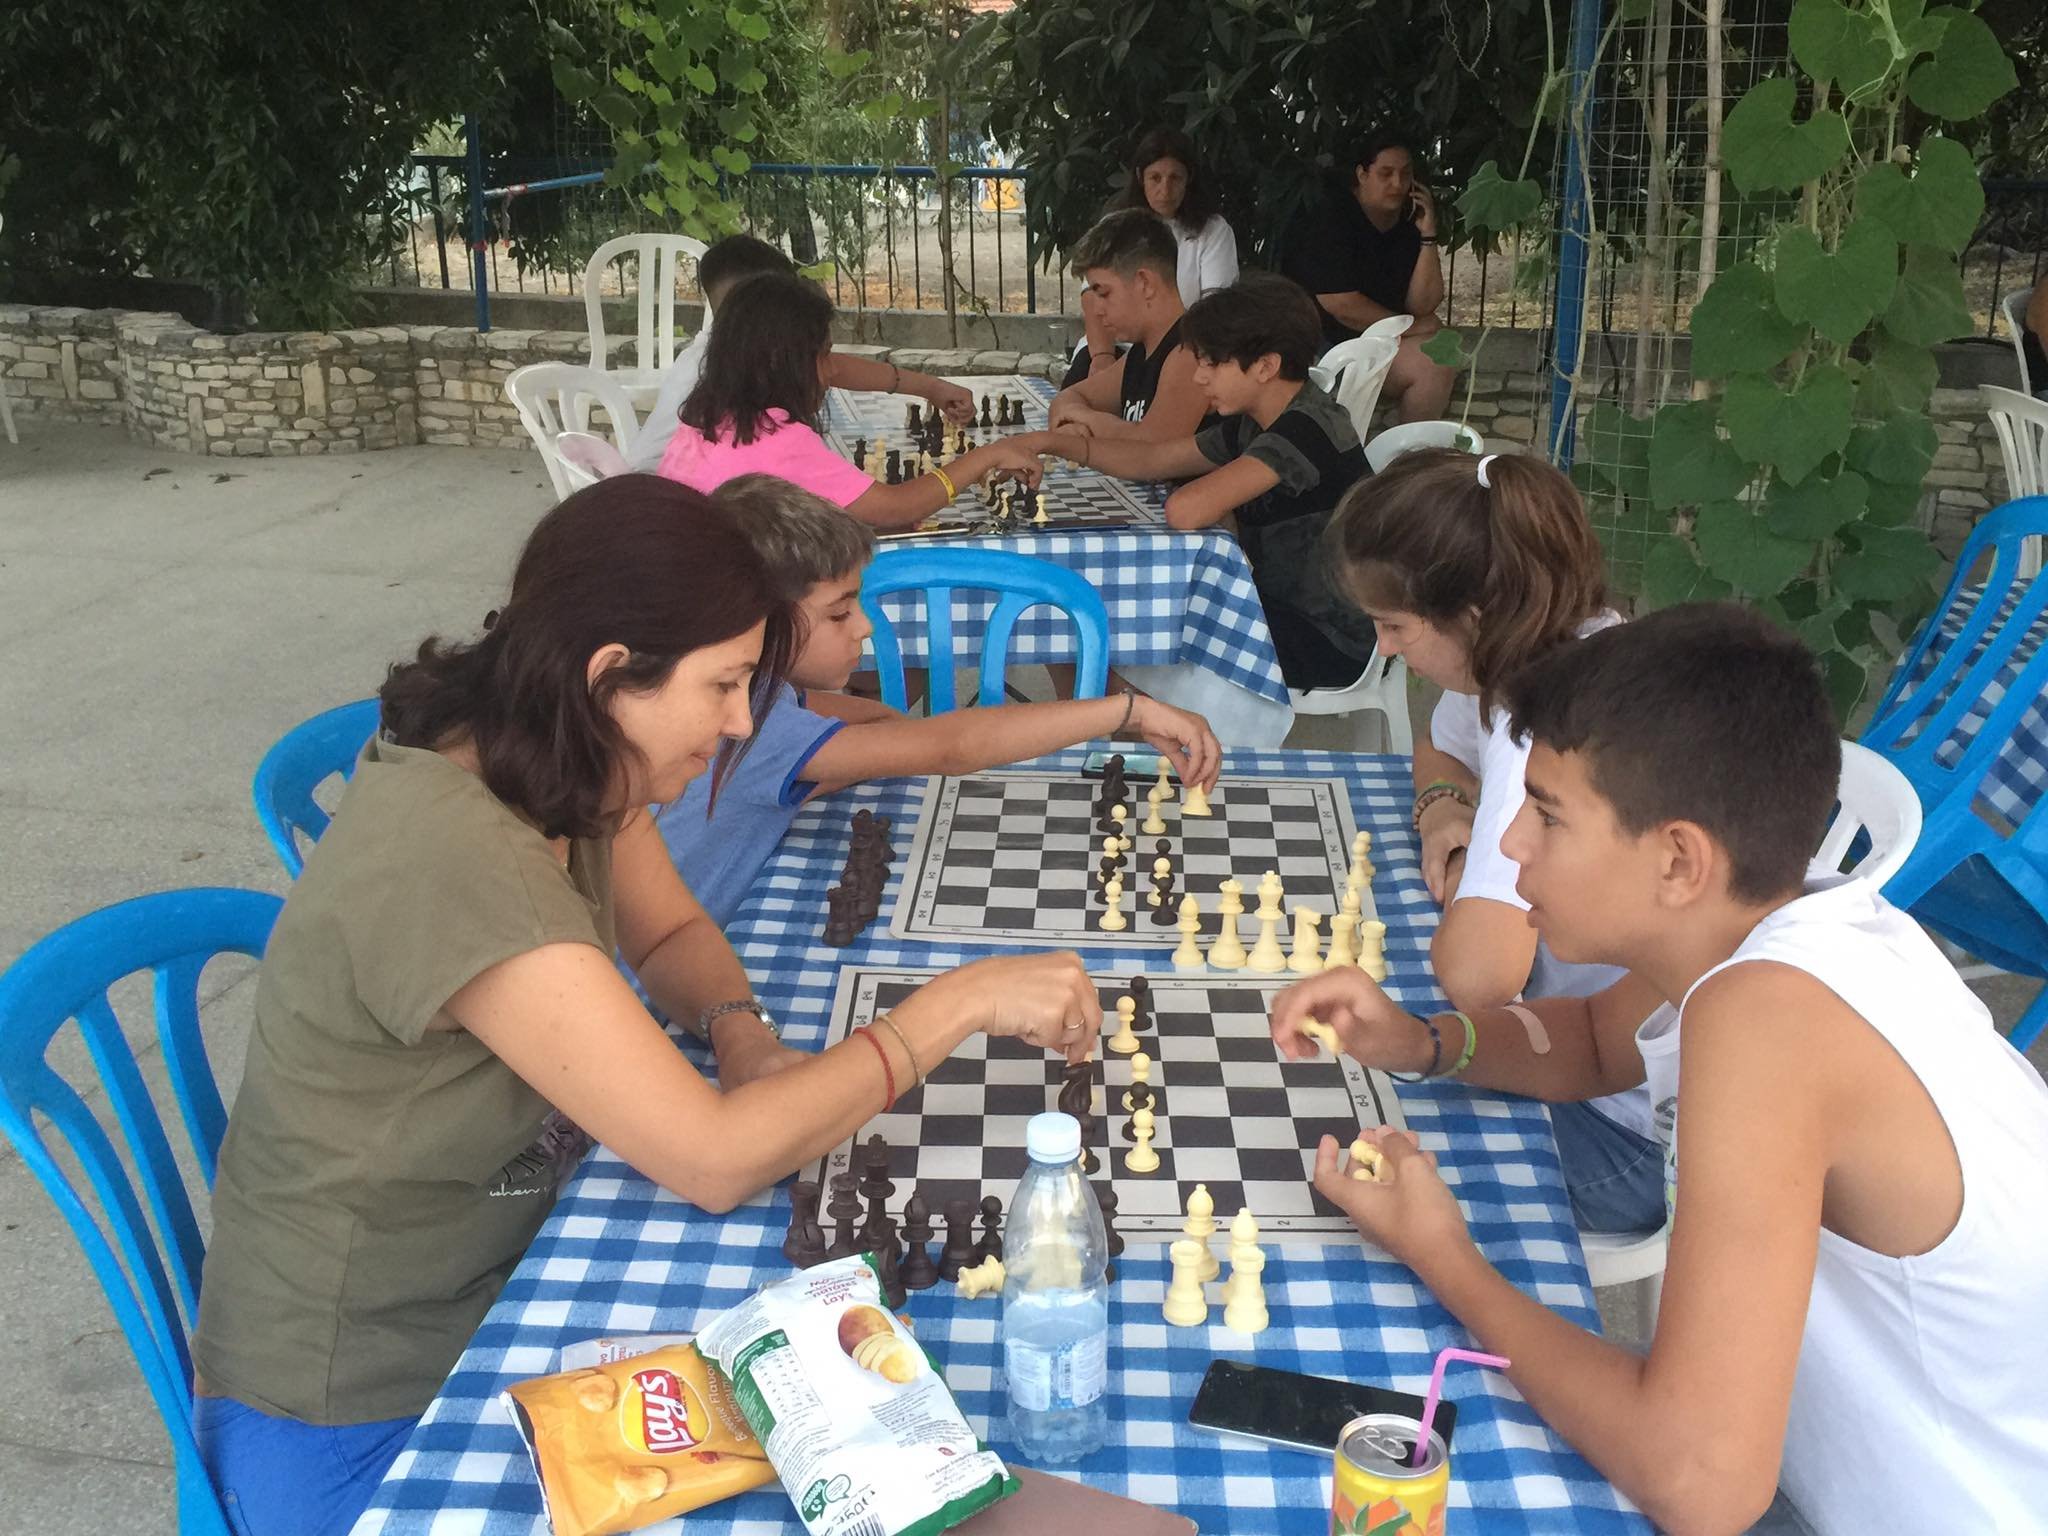 Πραγματοποιήθηκε η πρώτη σκακιστική διάλεξη με τίτλο “Πρώτη Γνωριμία με το Σκάκι” στην Ορά